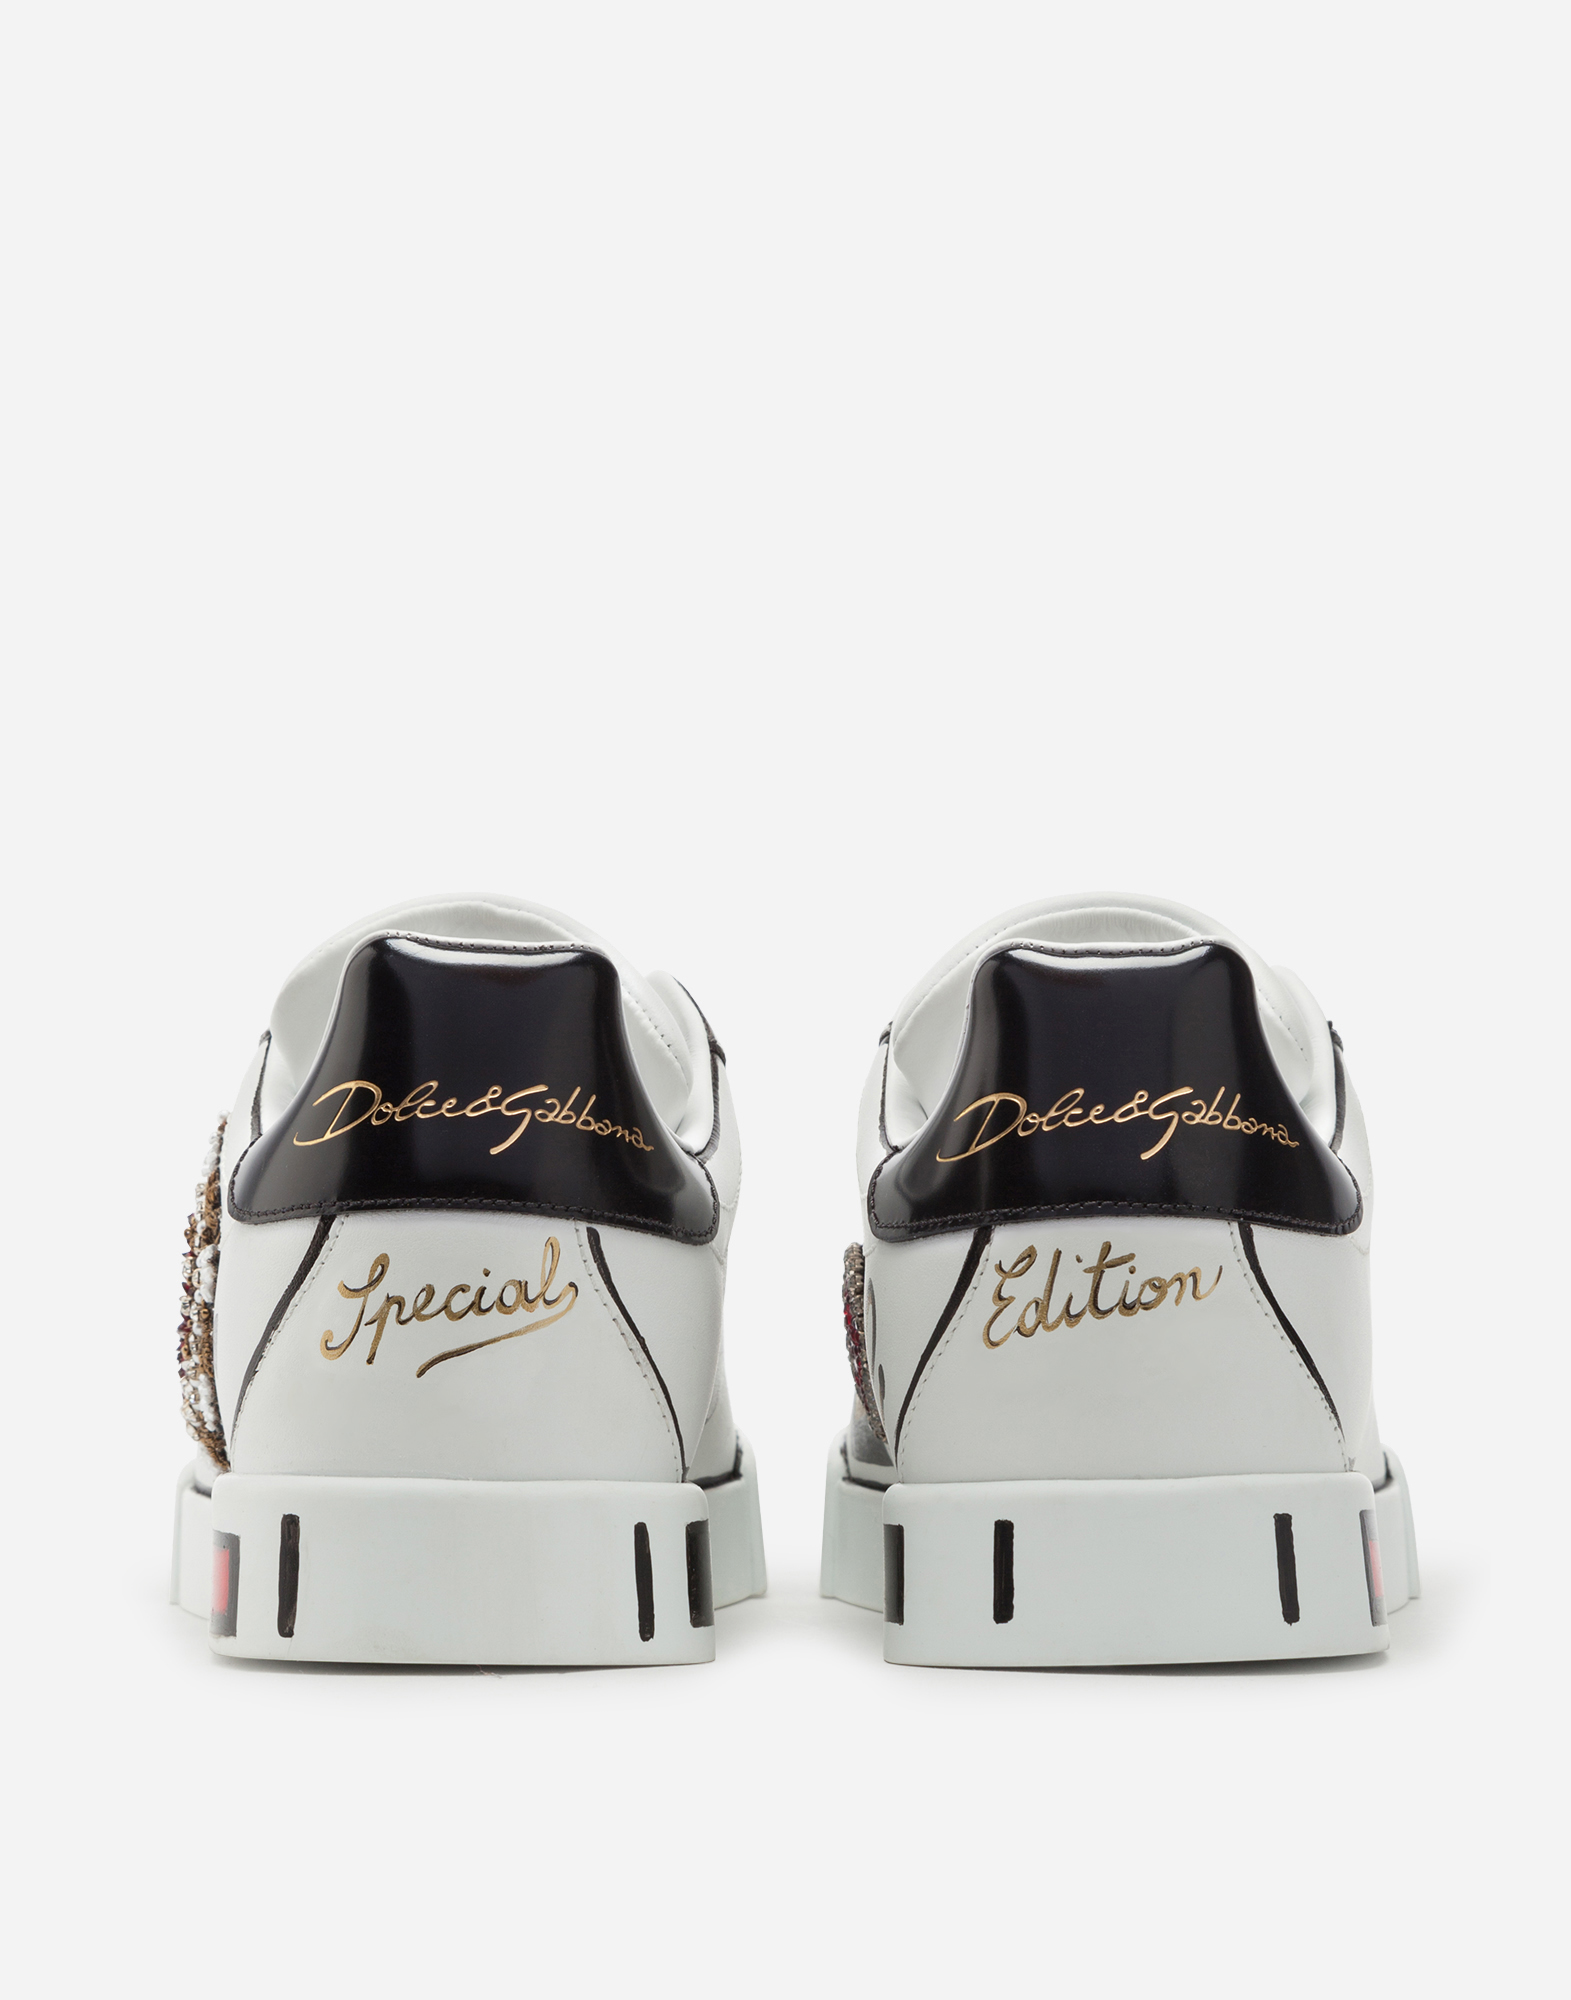 Dolce & Gabbana Limited edition Portofino sneakers  2